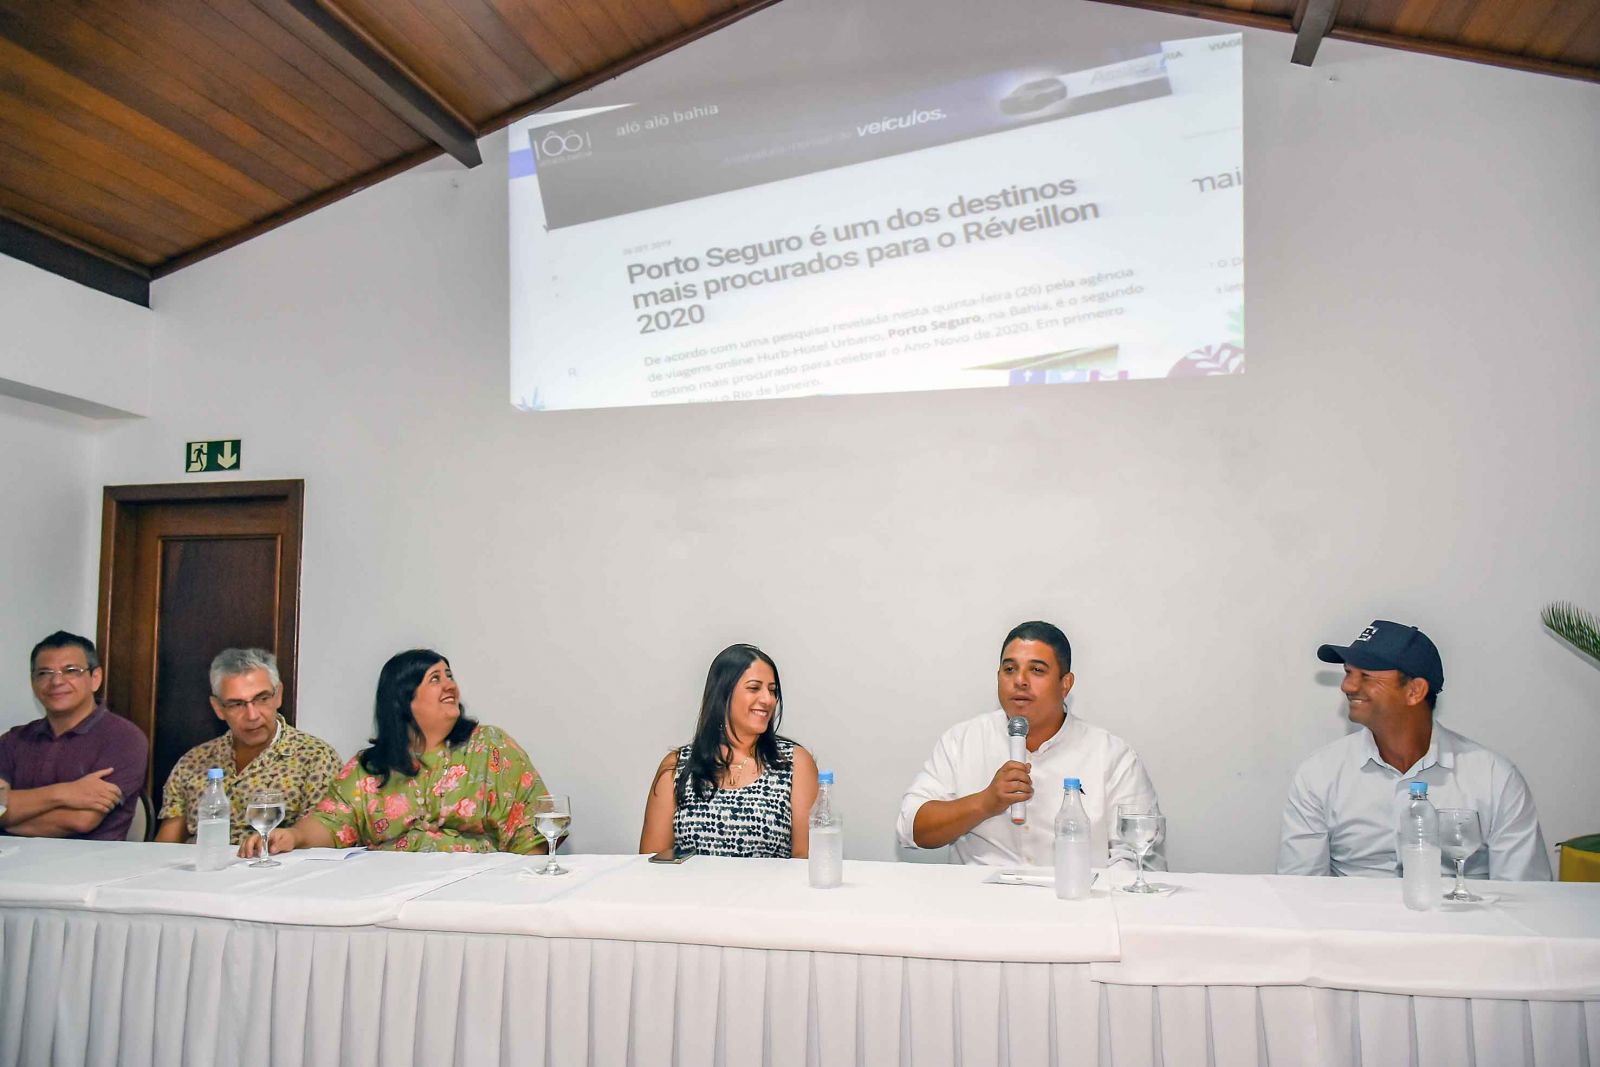 Secretário de Relações Institucionais, Maurício Pedrosa, falou que a festa promete surpreender com uma programação de qualidade. (Foto: Divulgação)